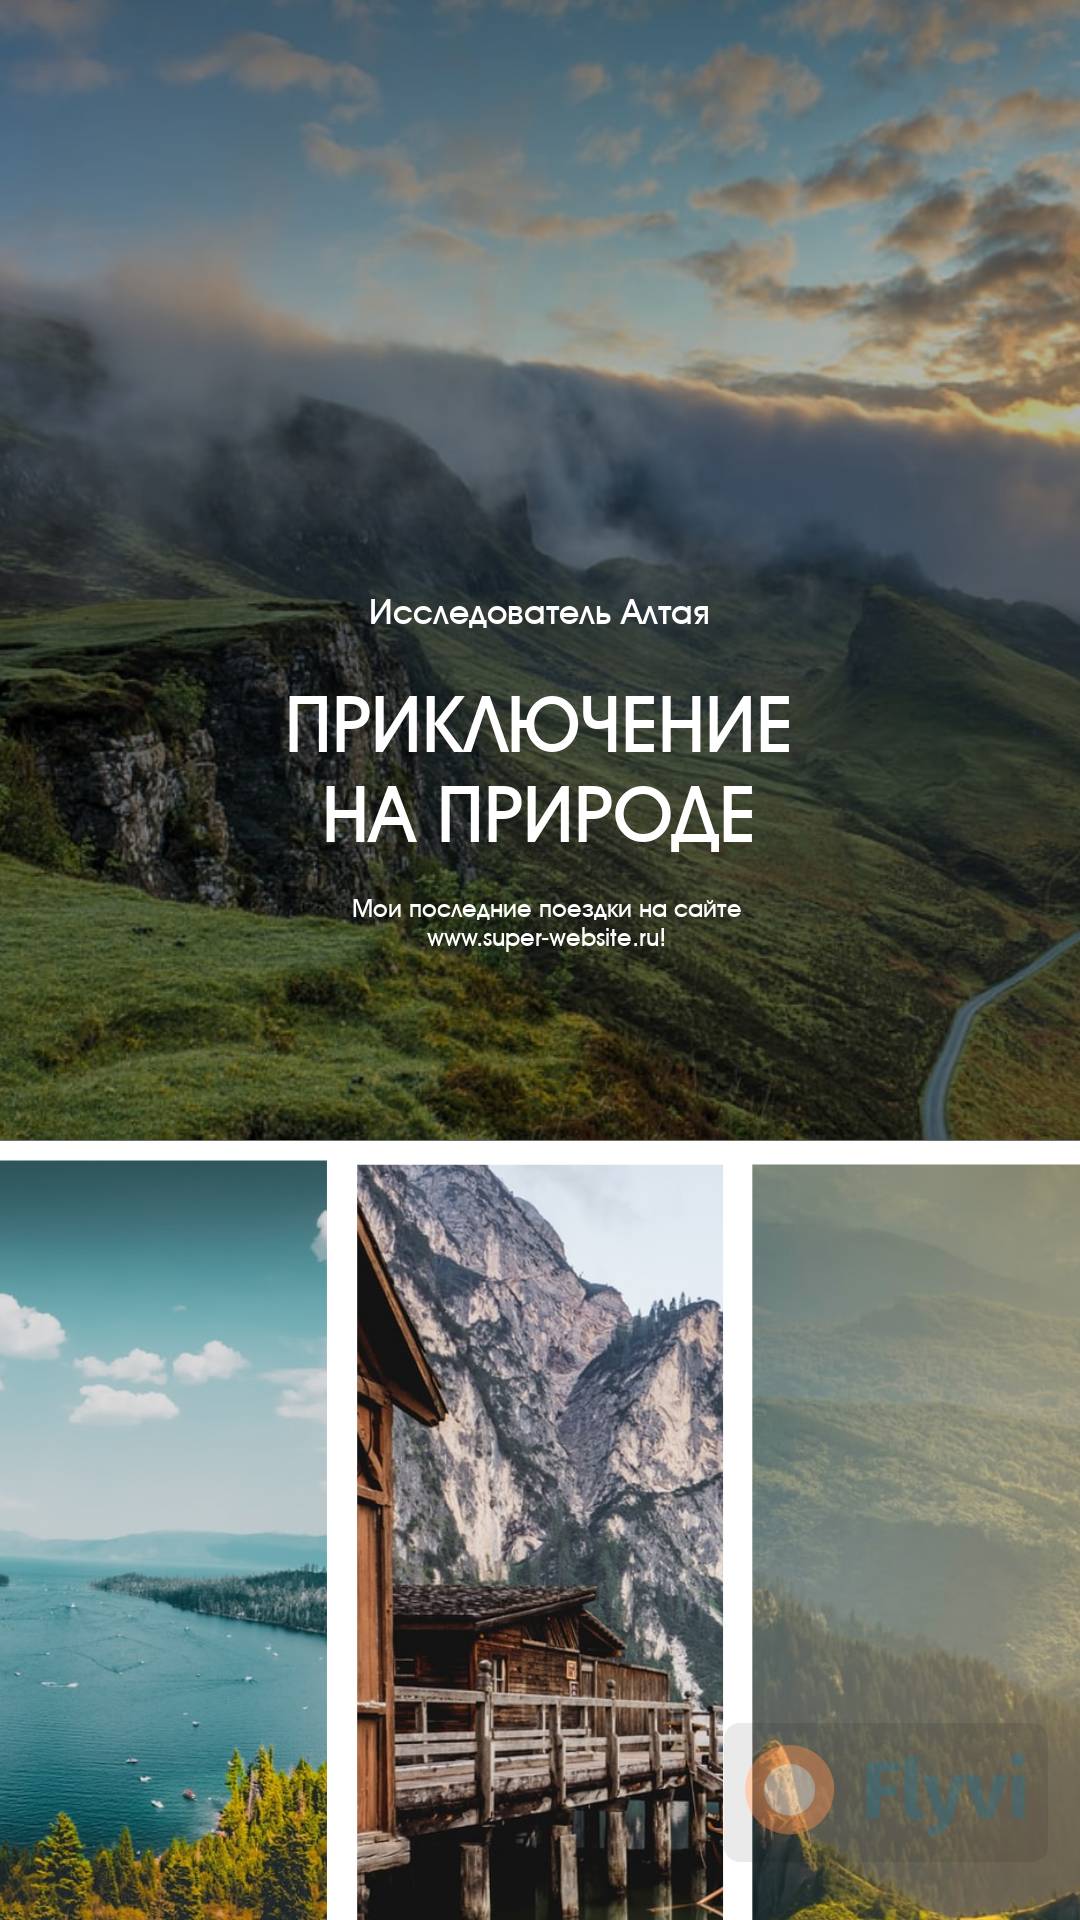 Привлекательная сторис для туристического агентства с пейзажами из путешествия по Алтаю для подписчиков в Инстаграм